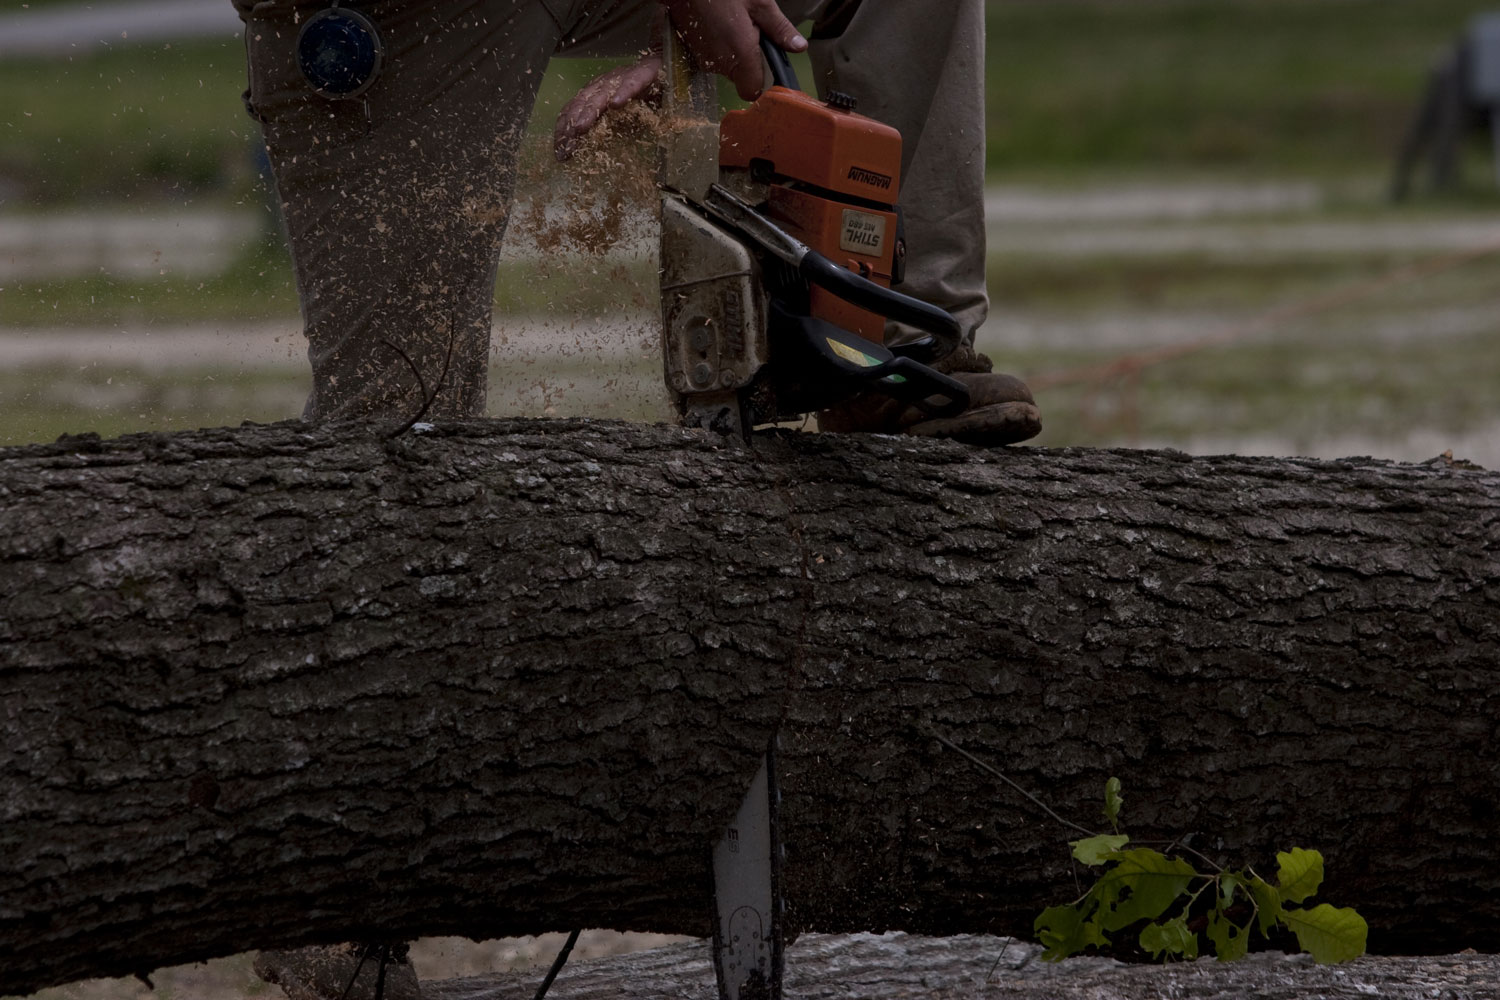 A chainsaw cuts through a log